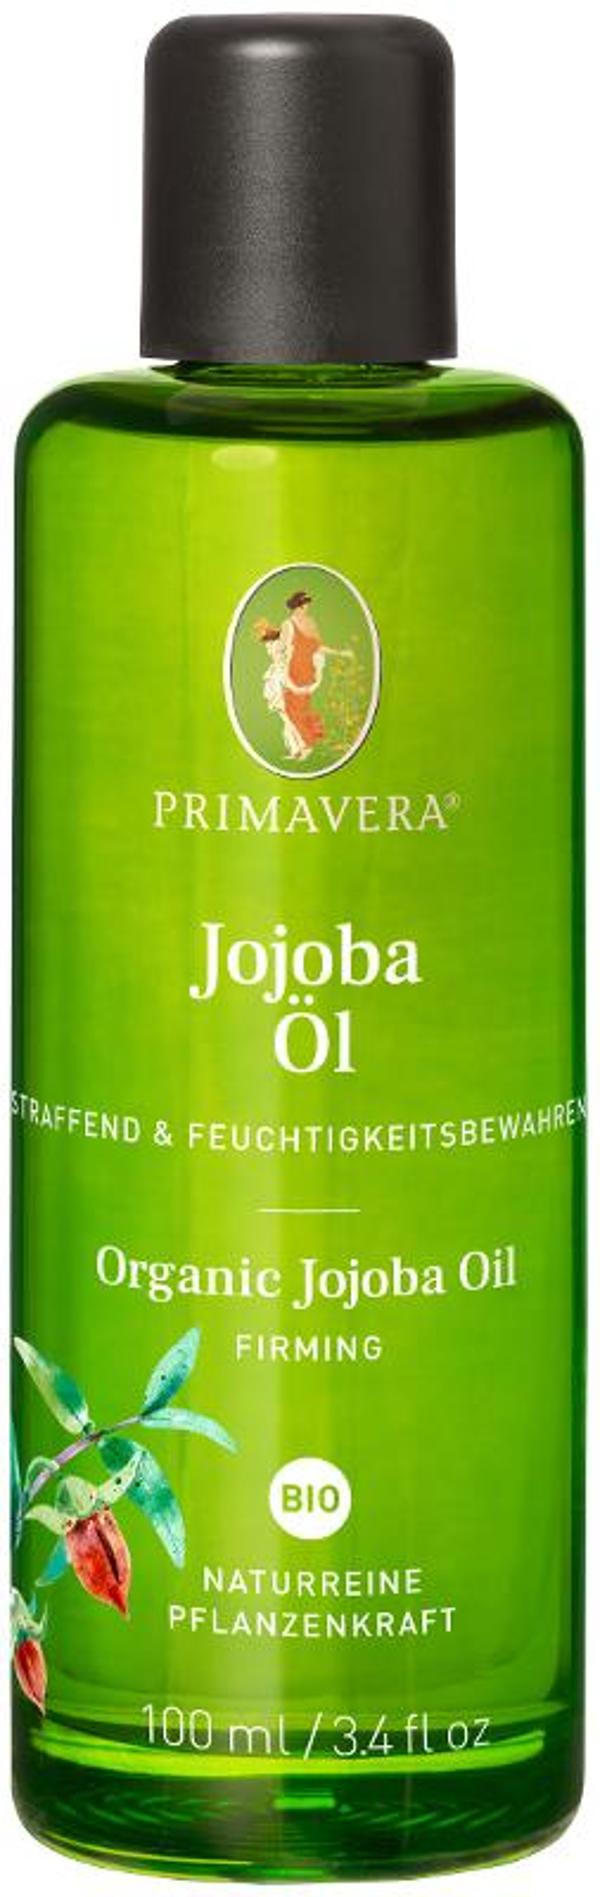 Produktfoto zu Jojobaöl (100 ml)